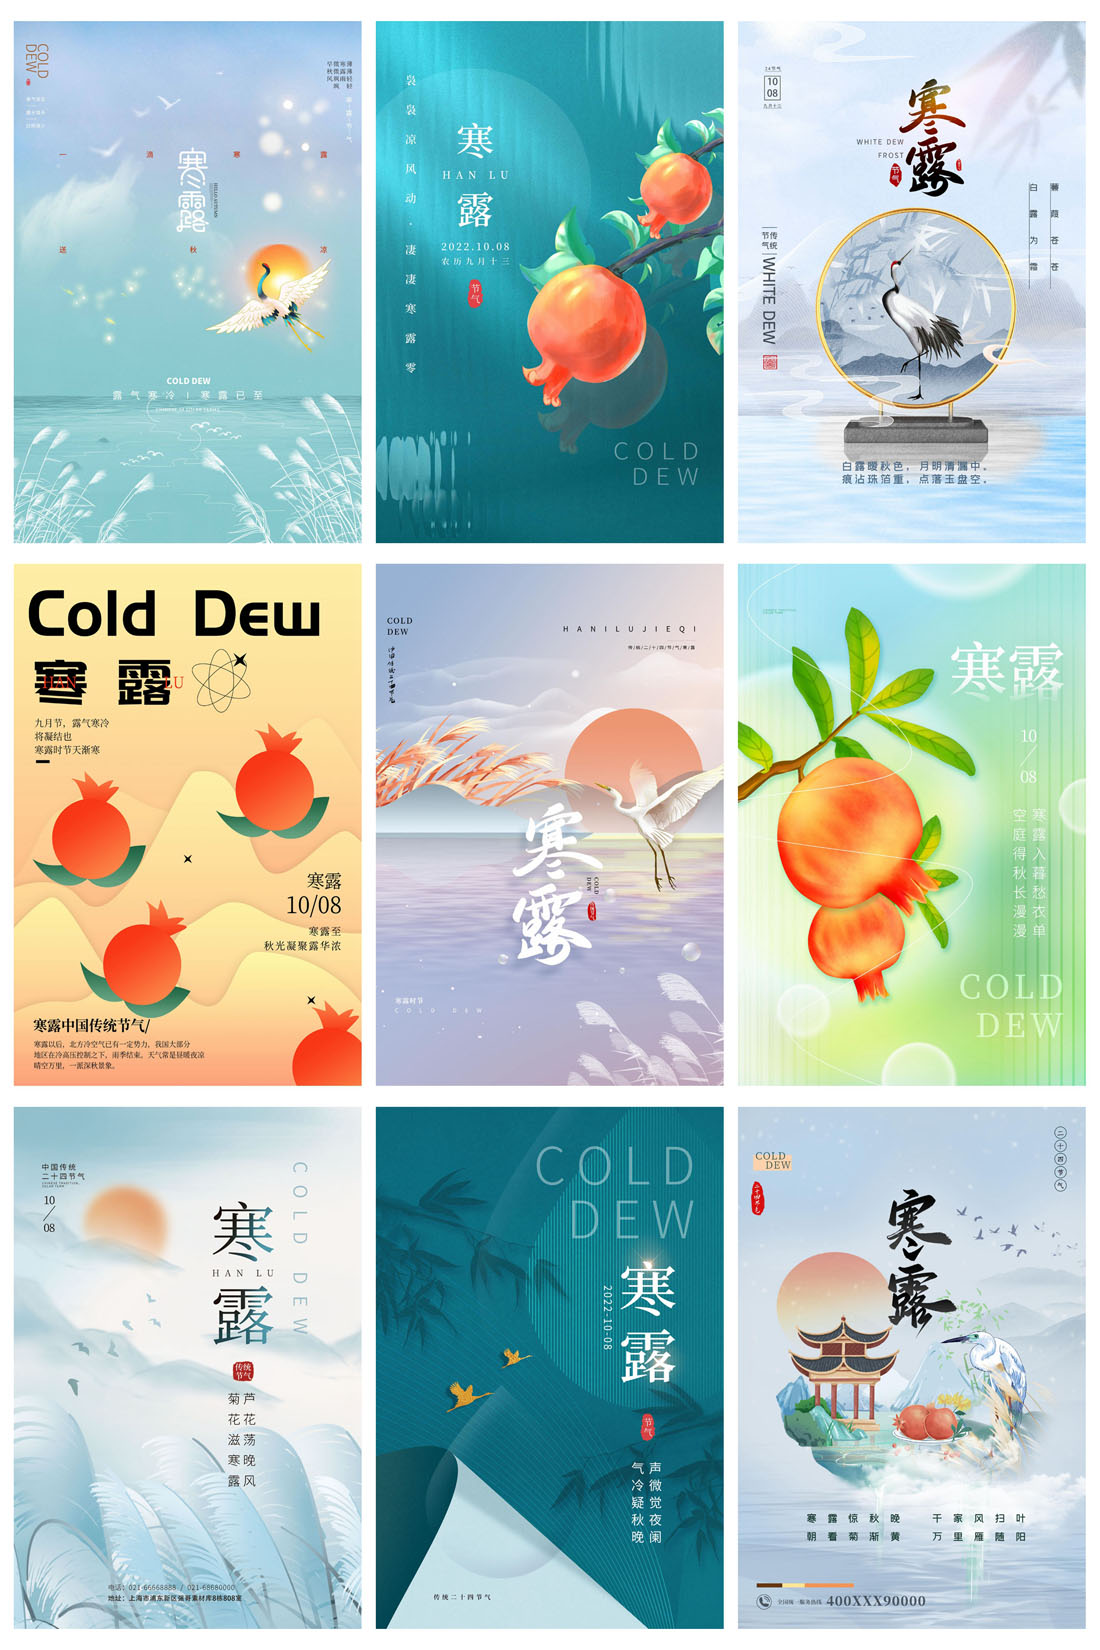 94款中国传统二十四节气之寒露节日海报PSD模板 设计素材 第12张